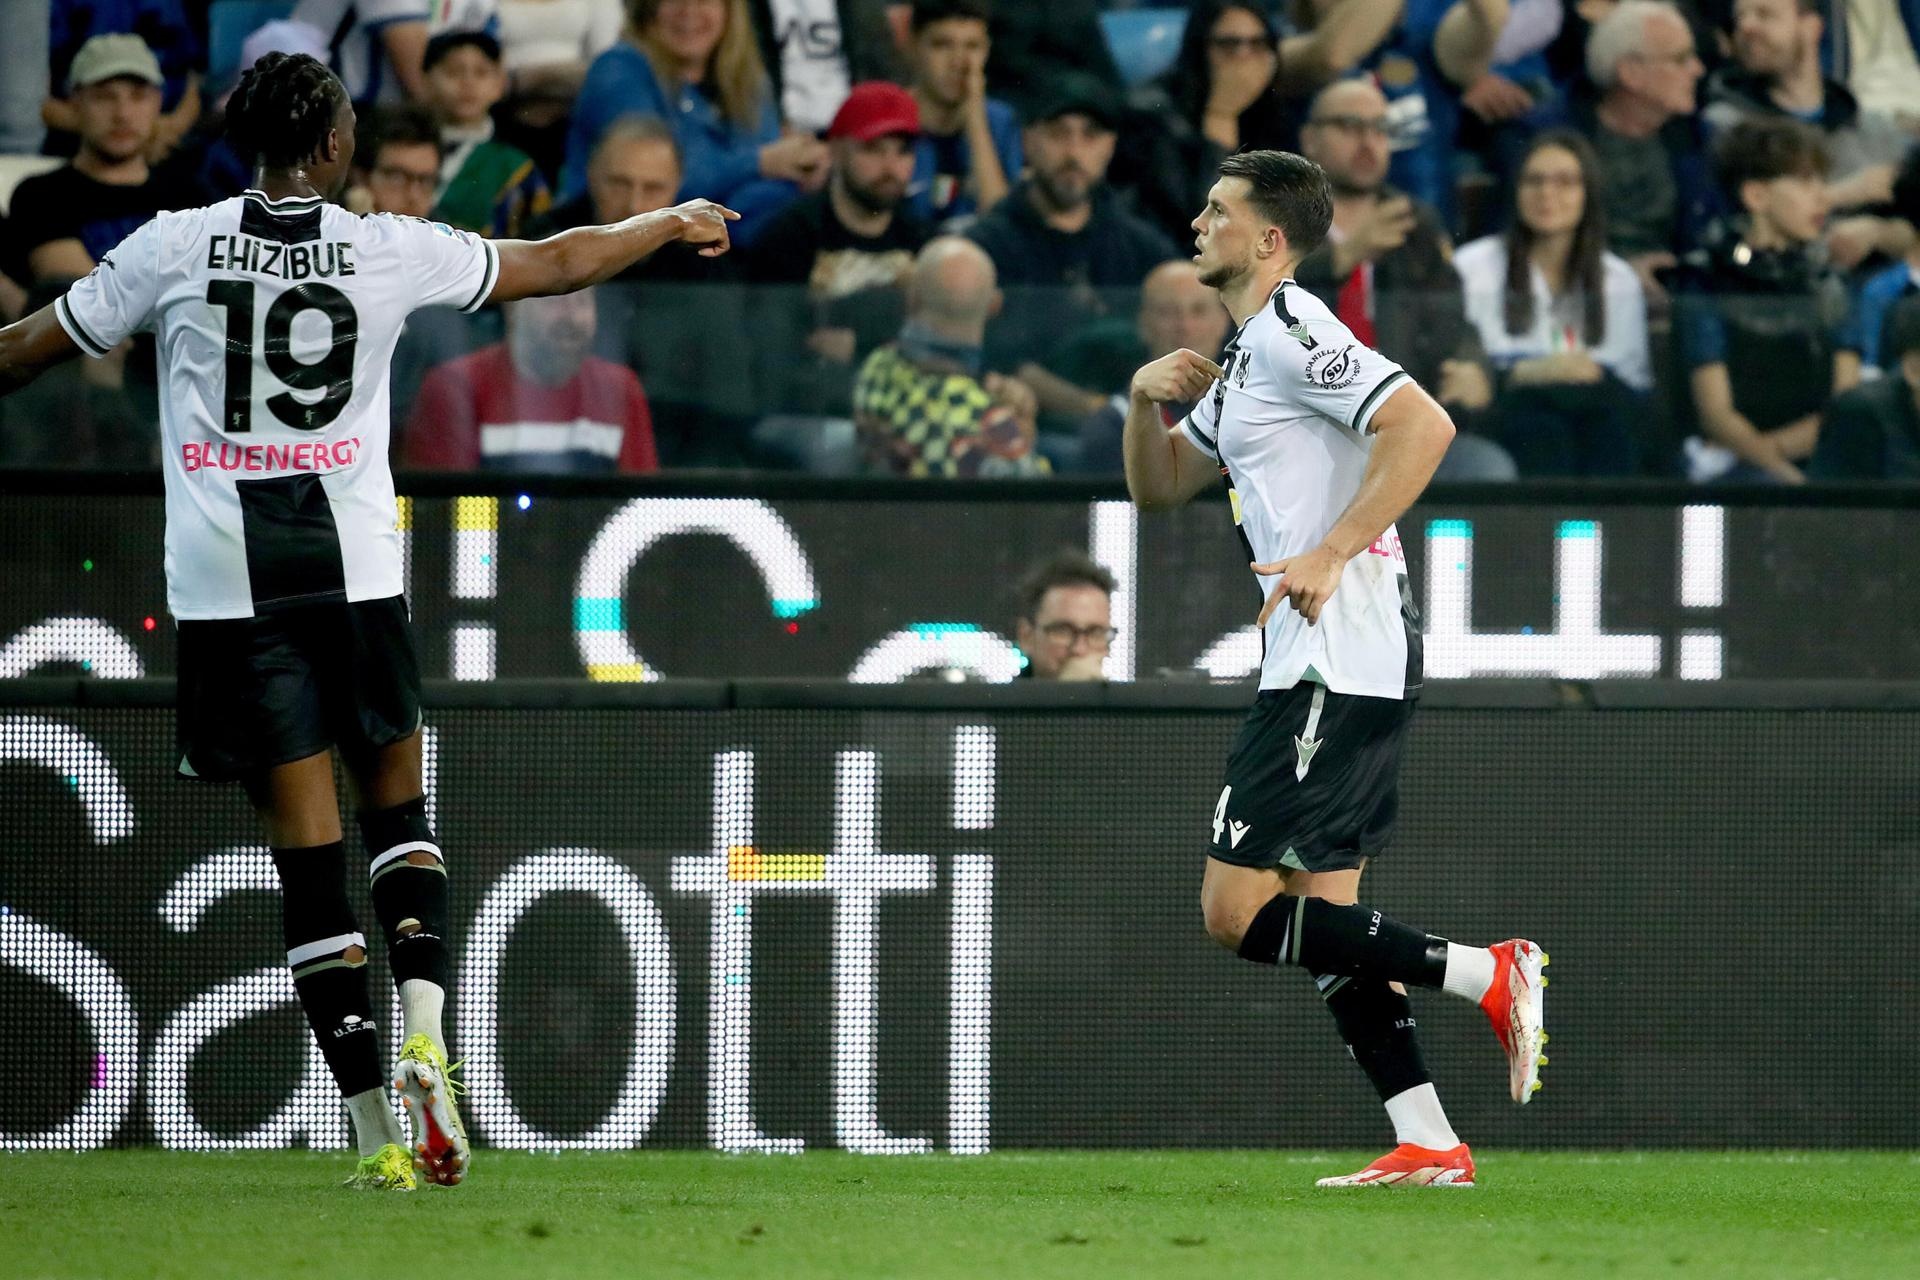 Udinese rubricó este lunes una valiosísima victoria ante el Lecce (0-2) que le permite coger aire y salir del descenso a falta de dos jornadas para el final de la Serie A. La mano de Fabio Cannavaro ha llevado al equipo a sumar 5 de los 9 últimos puntos en juego.